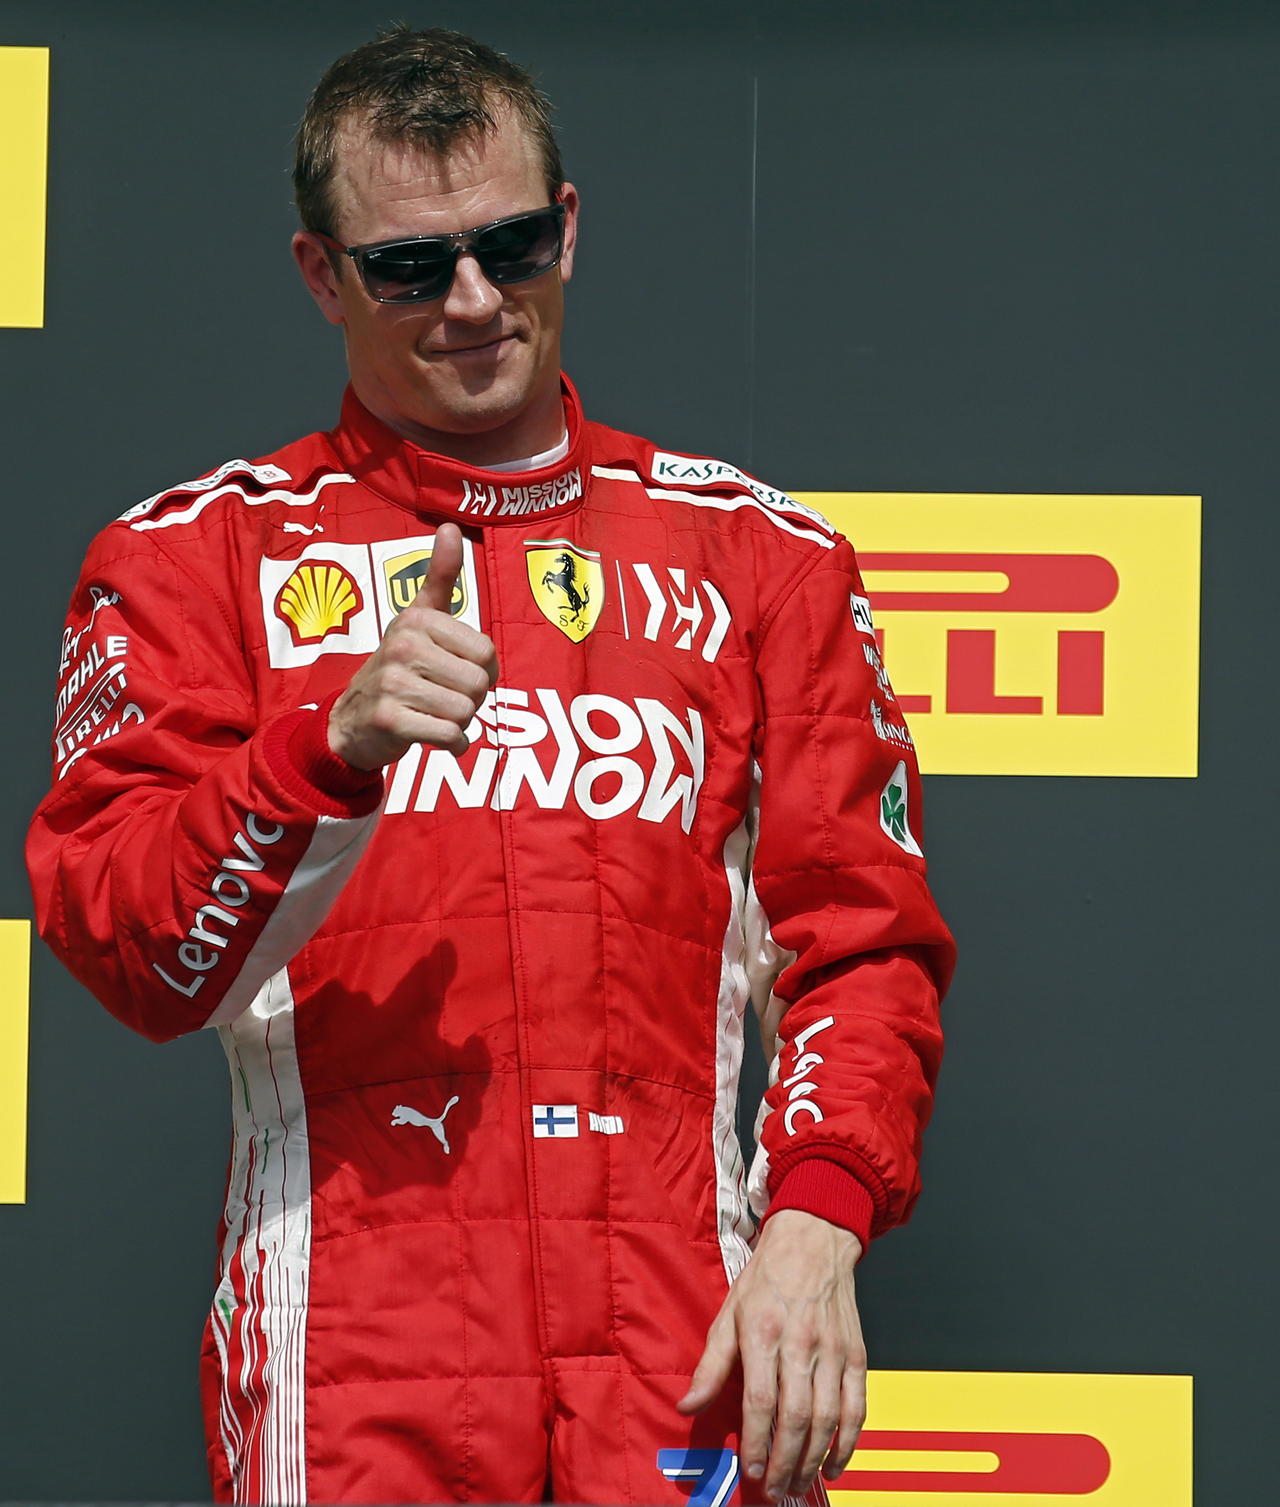 Kimi Raikkonen tenía más de cien carreras sin ganar, hasta que obtuvo el triunfo el domingo pasado en el Gran Premio de Estados Unidos.